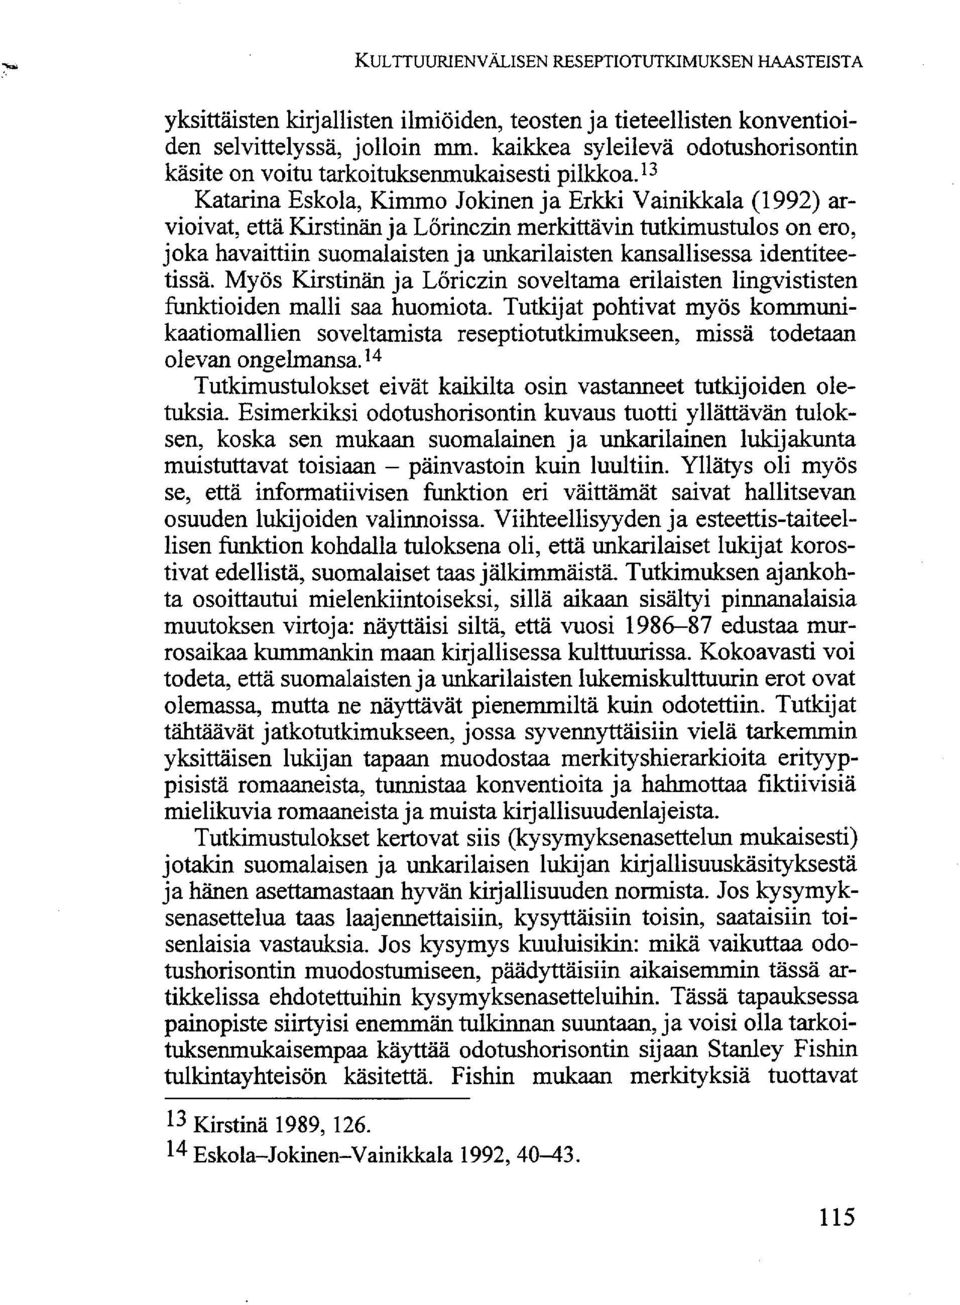 13 Katarina Eskola, Kimmo Jokinen ja Erkki Vainikkala (1992) arvioivat, että Kirstinän ja Lörinczin merkittävin tutkimustulos on ero, joka havaittiin suomalaisten ja unkarilaisten kansallisessa